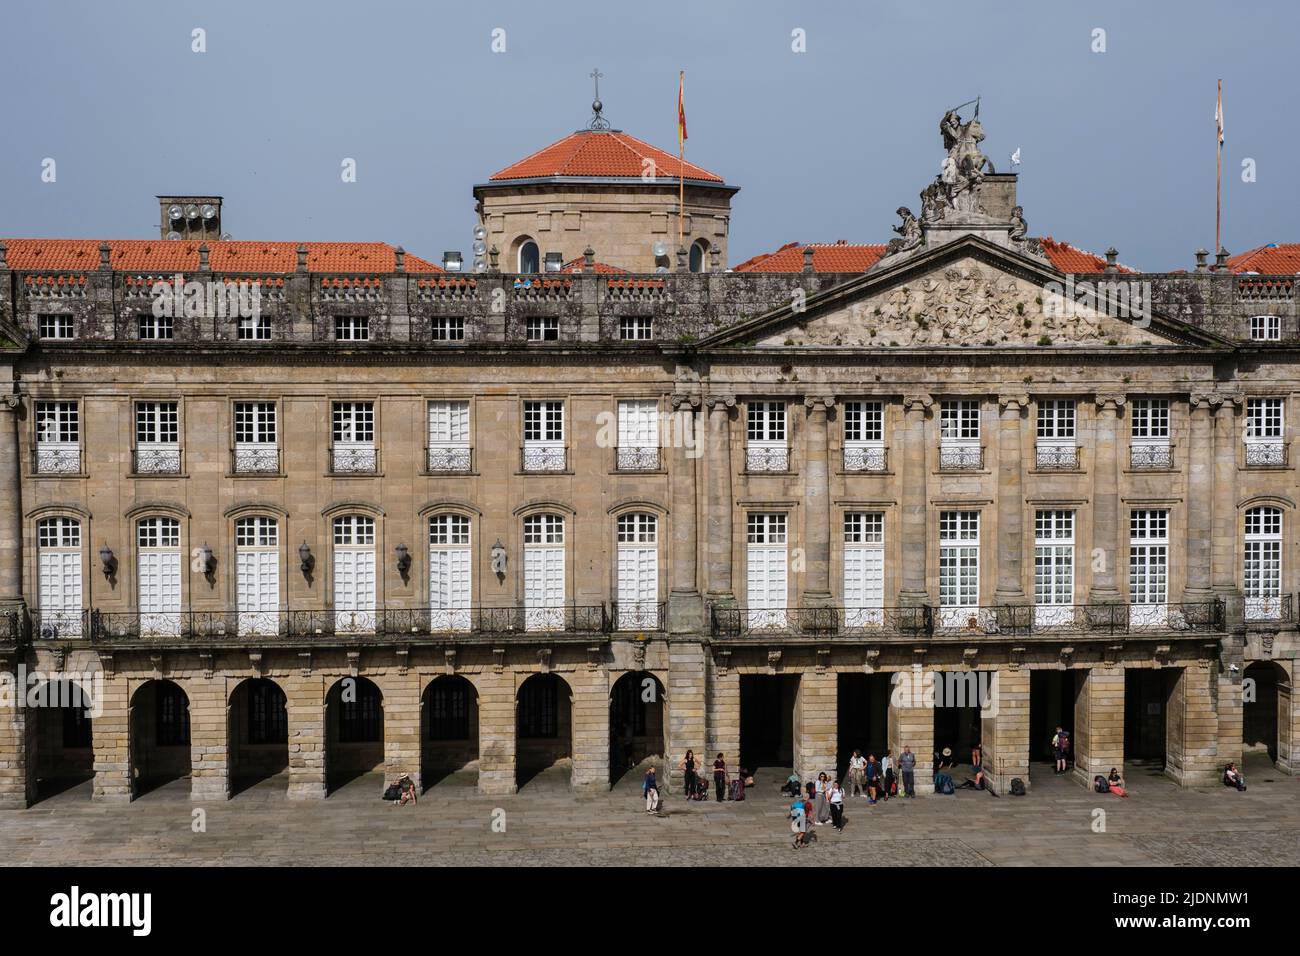 Spain, Santiago de Compostela, Galicia. Town Hall (Palacio de Rajoy), Seen from the Cathedral of Santiago de Compostela. Stock Photo